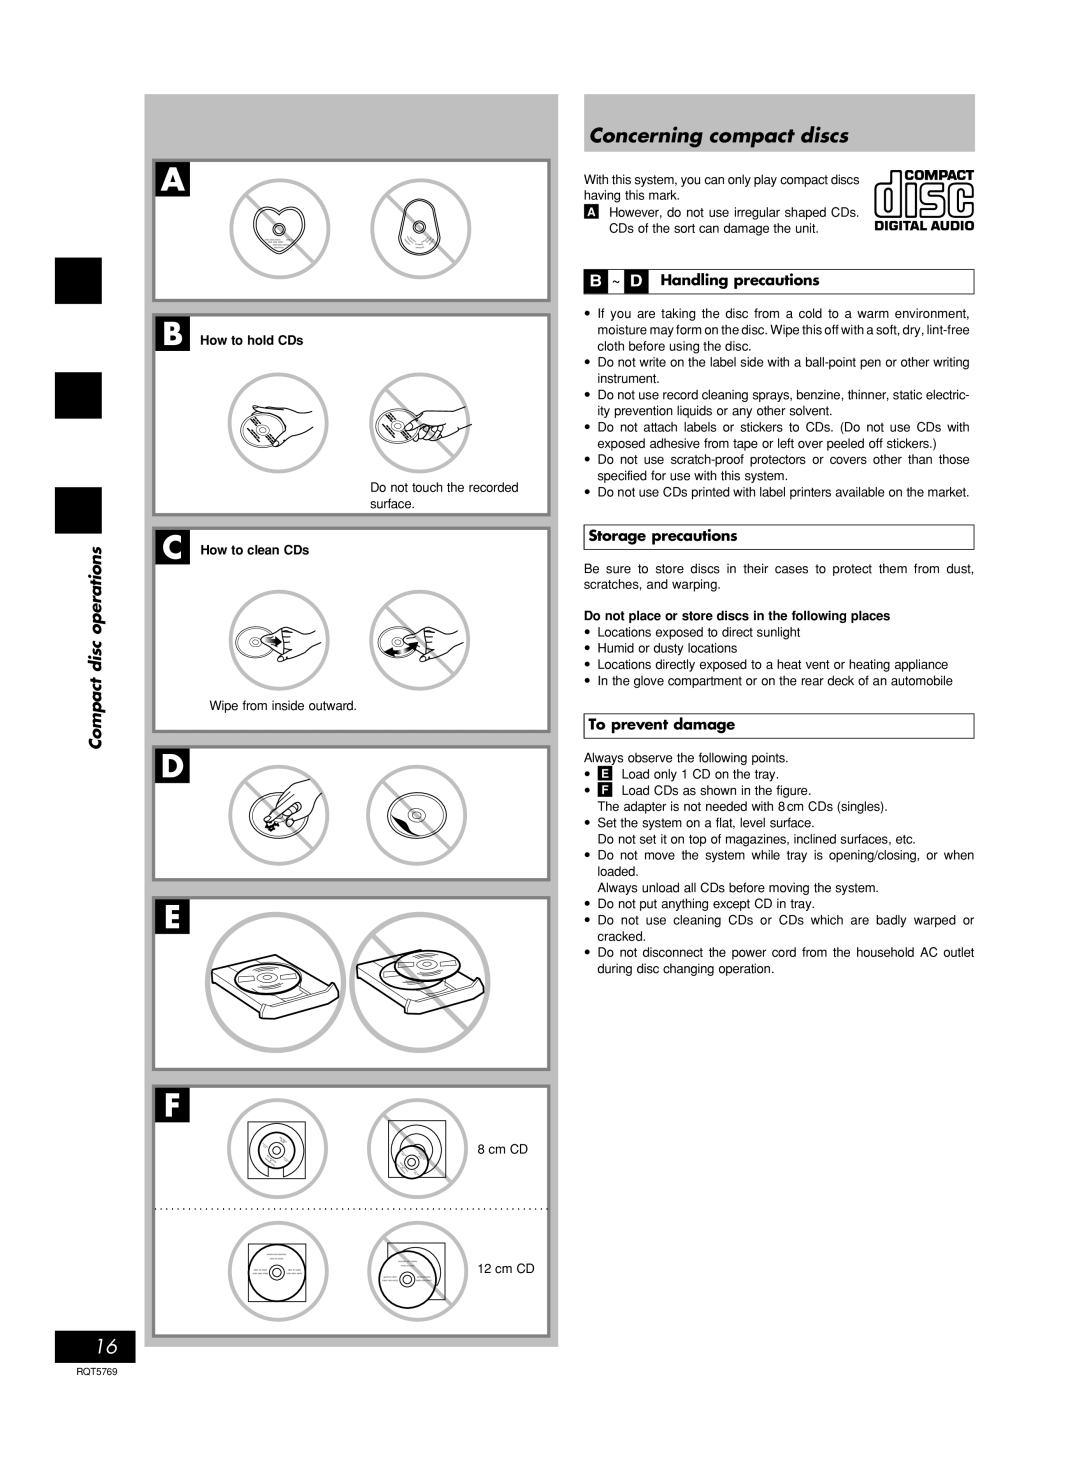 Panasonic SC-AK66 manual D E F, Concerning compact discs, discoperations, B ~ D Handling precautions, Storage precautions 